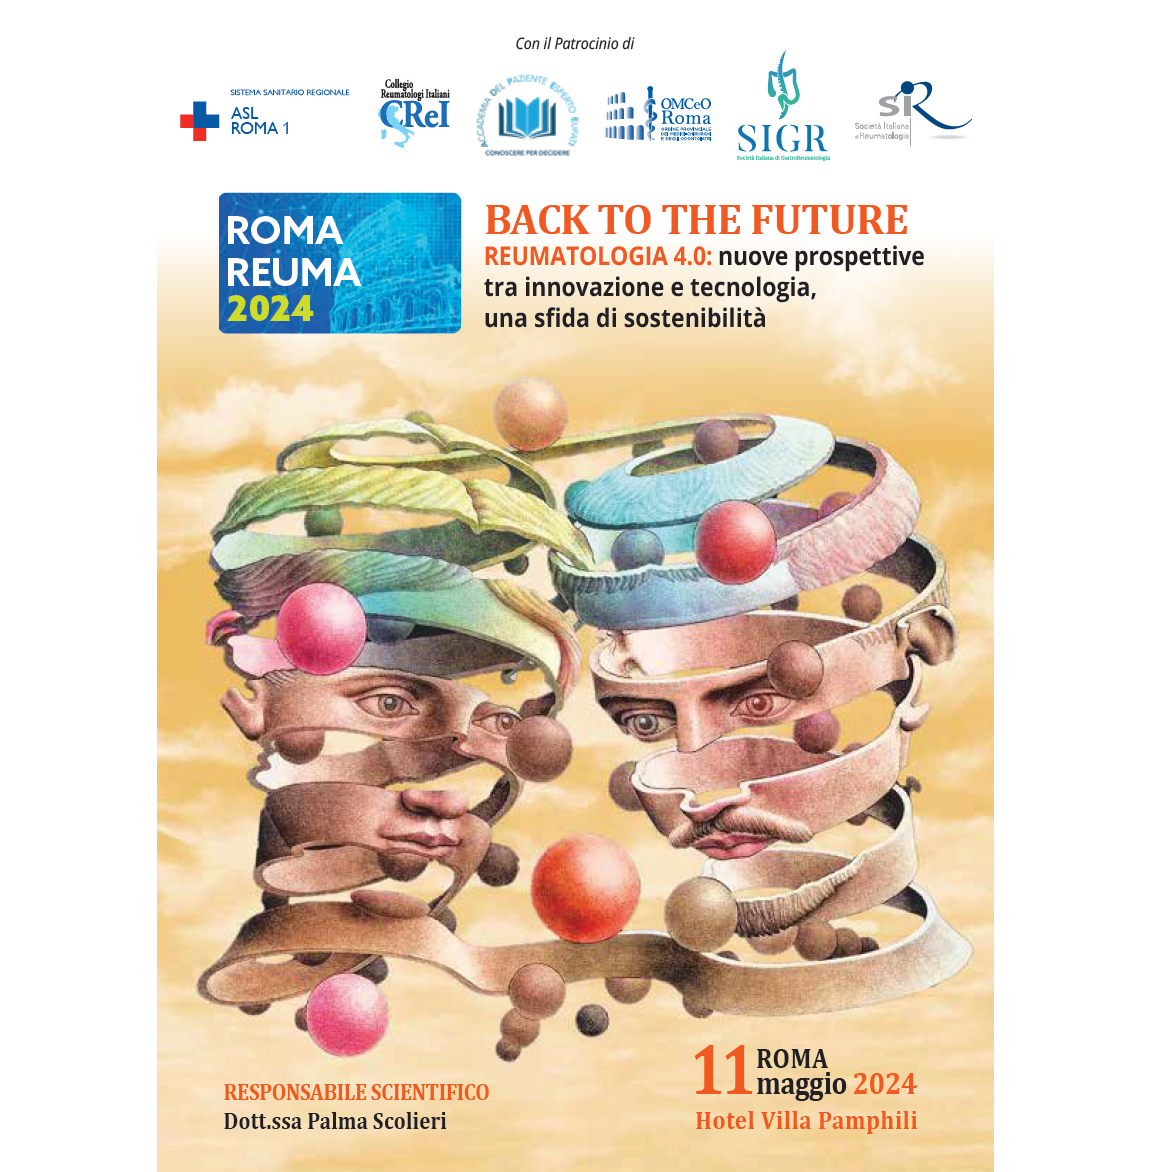 11 maggio "RomaReuma 2024", corso ECM sulle nuove prospettive della Reumatologia